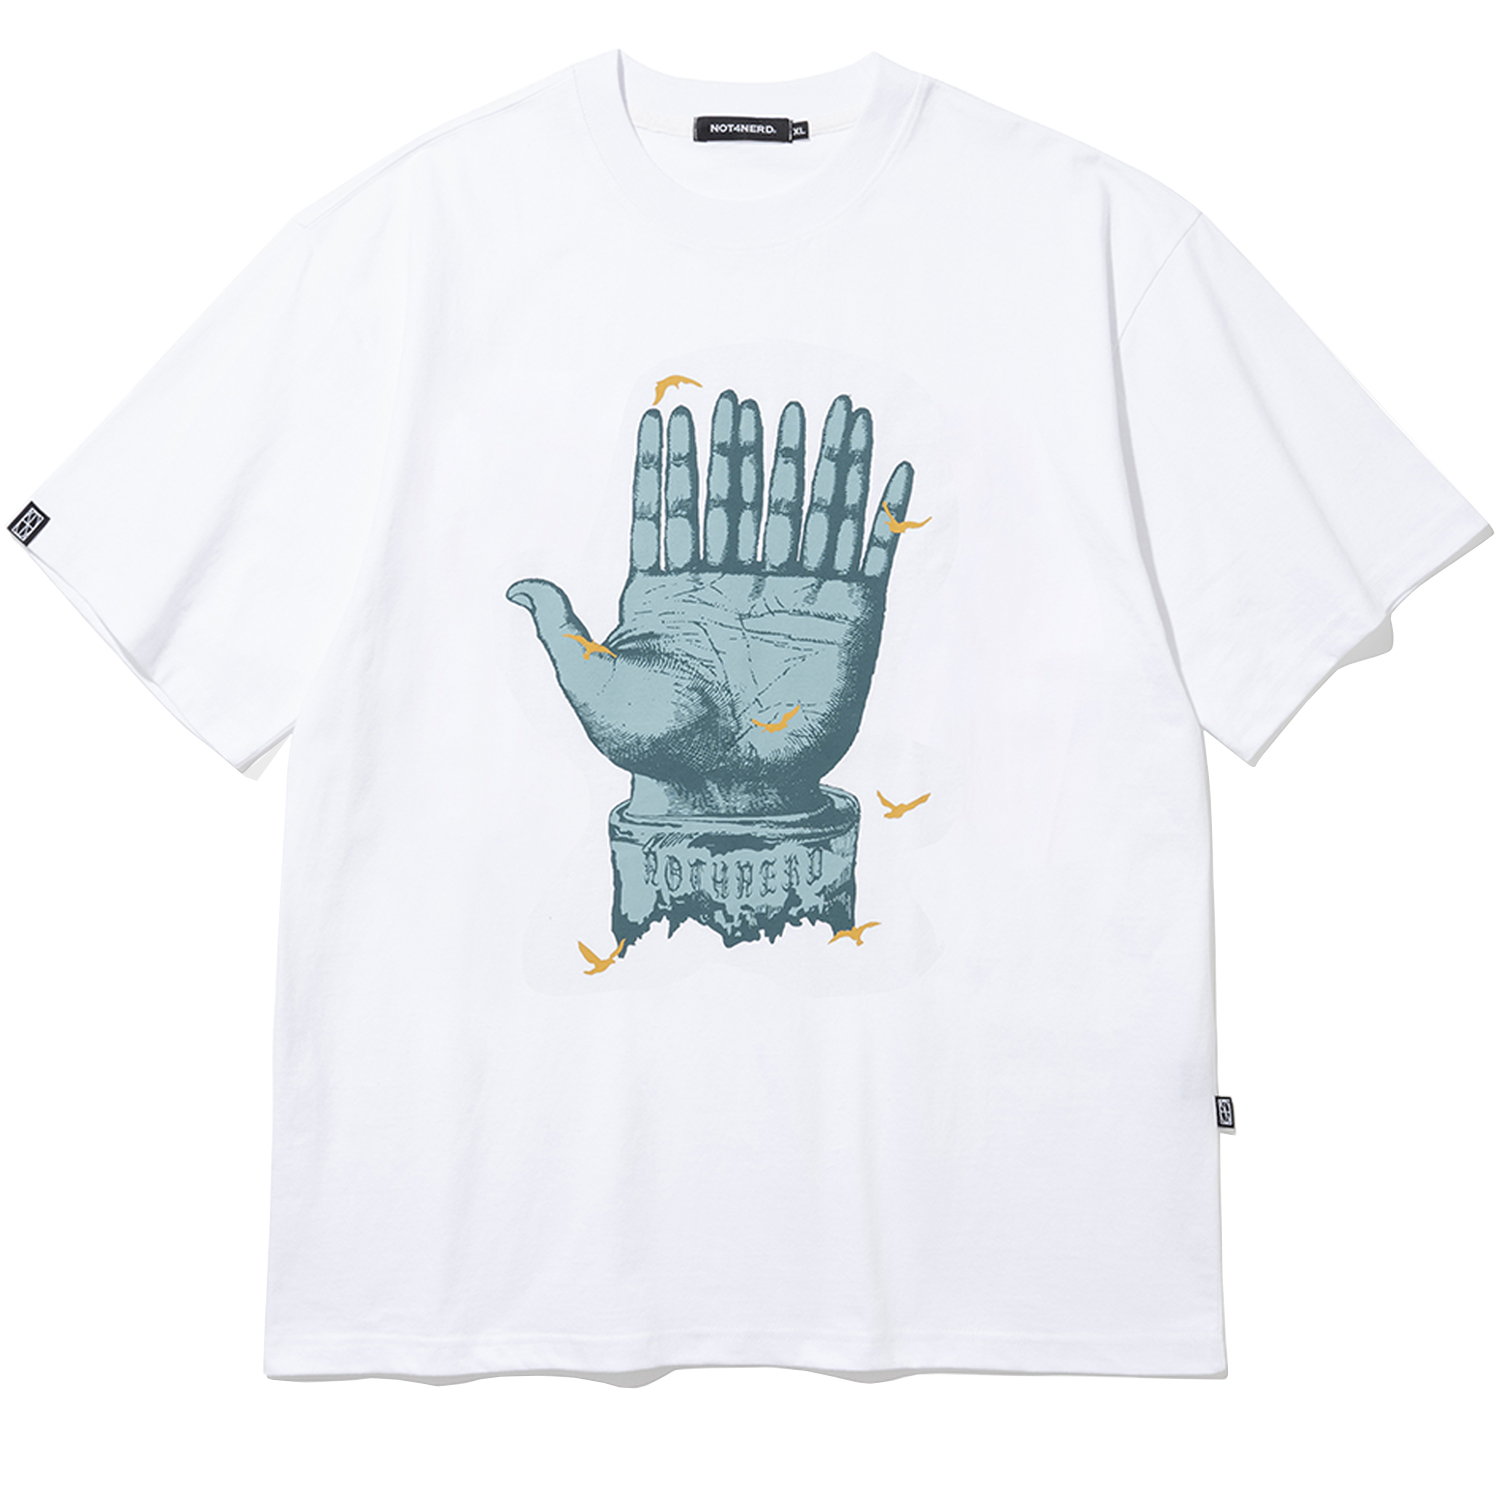 [4월 19일 예약배송] 9Fingers T-Shirts - White,NOT4NERD